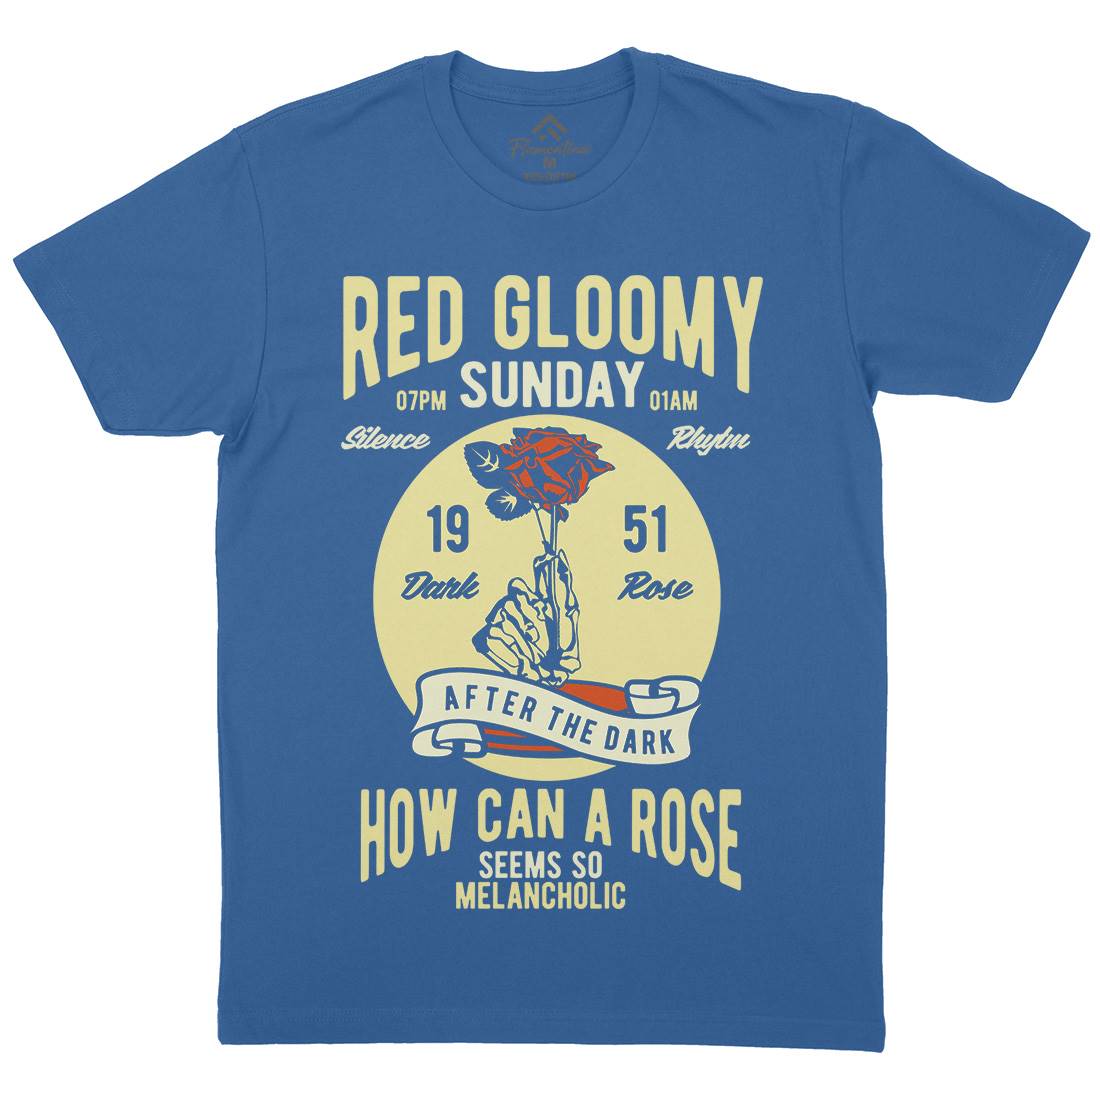 Red Gloomy Sunday Mens Organic Crew Neck T-Shirt Retro B437